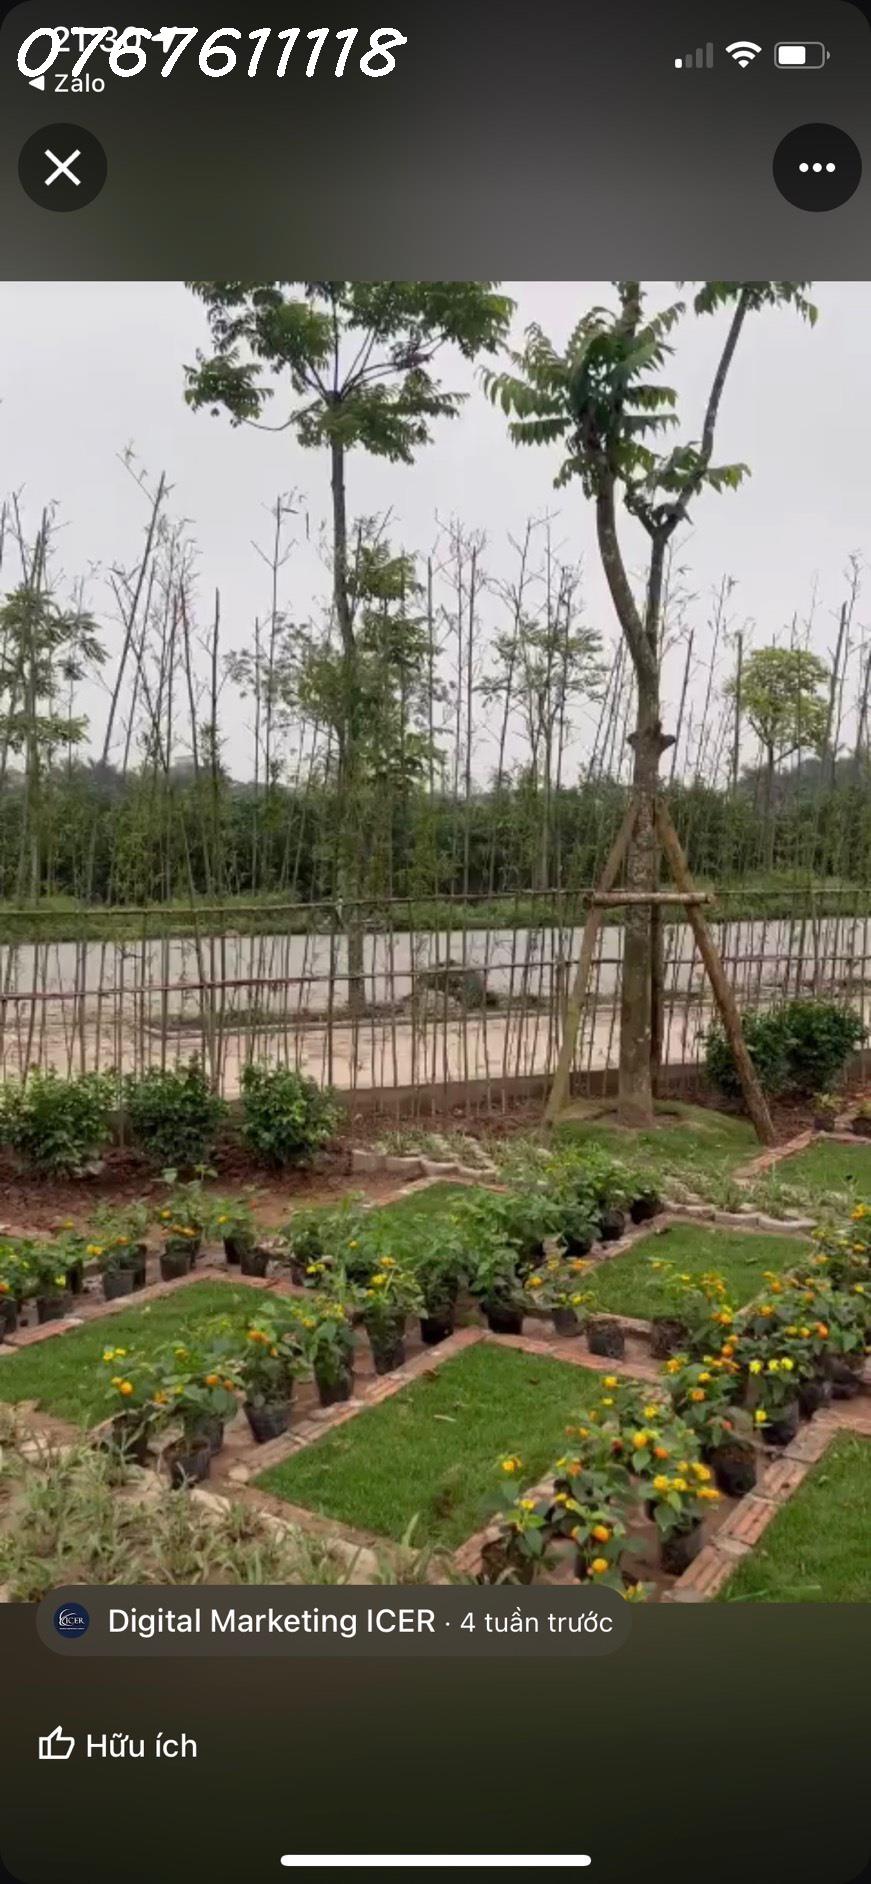 Bán đất mặt phố Nguyễn Văn Cừ 130m,MT8.6m,phù hợp xây tòa nhà cho thuê,310tr